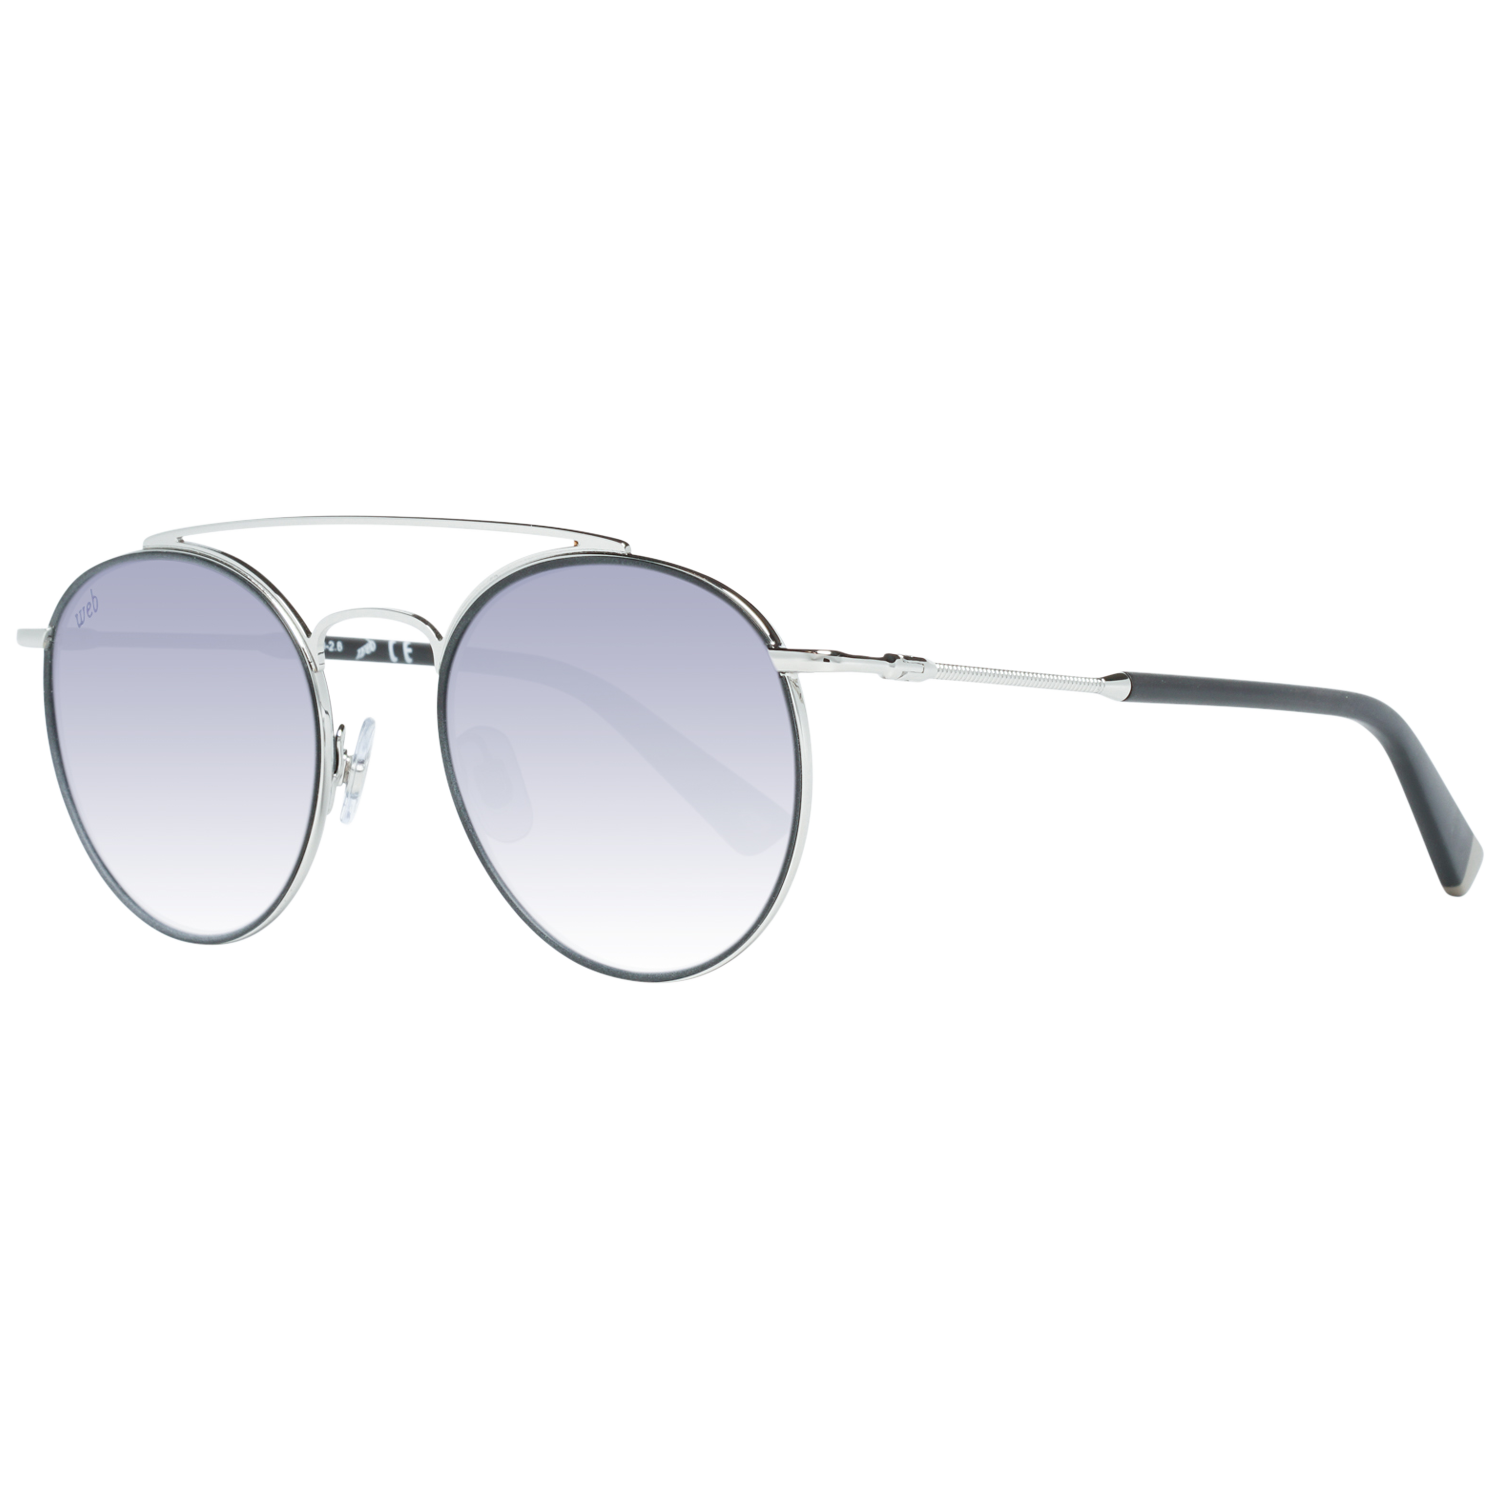 Web Sunglasses WE0188 14C 51